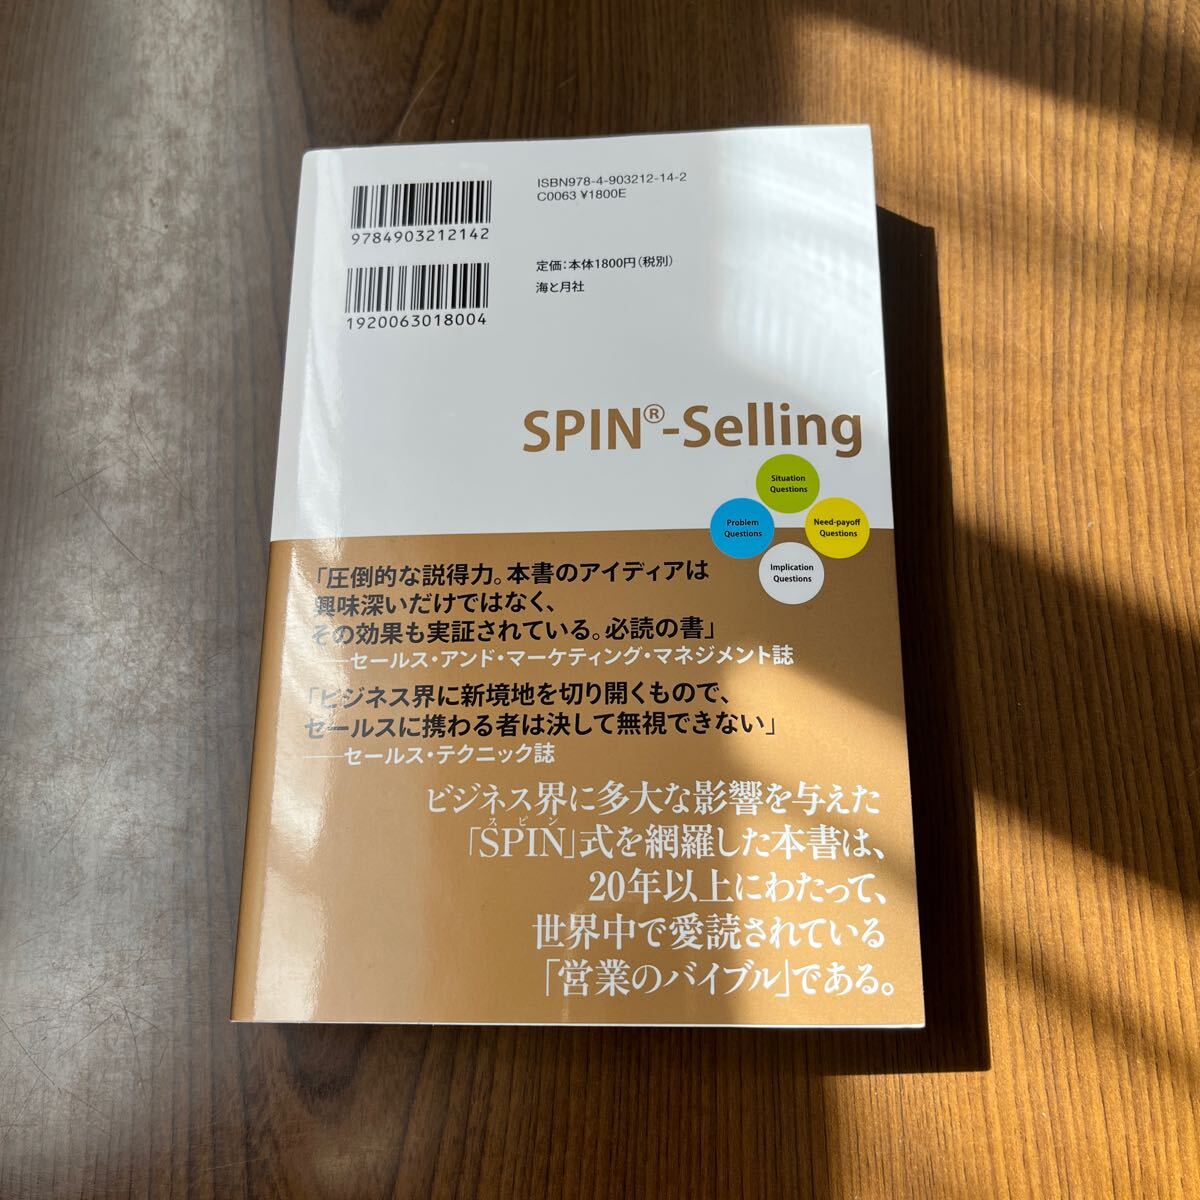 603p0925☆ 大型商談を成約に導く「SPIN」営業術